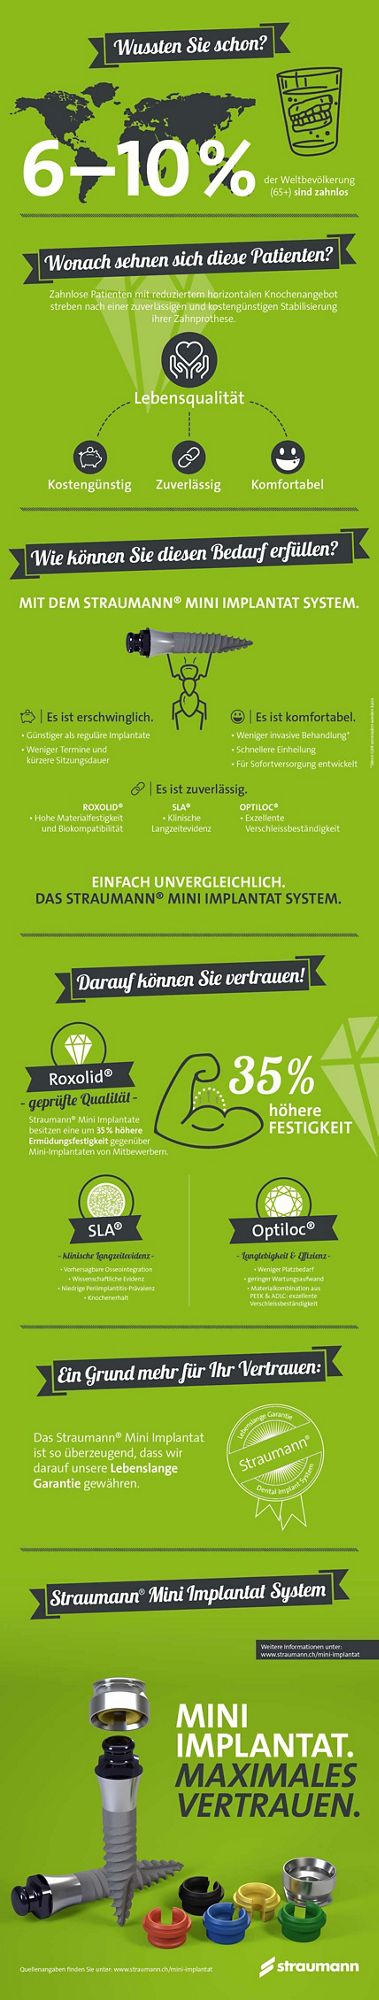 Infografik Straumann Mini Implantat System